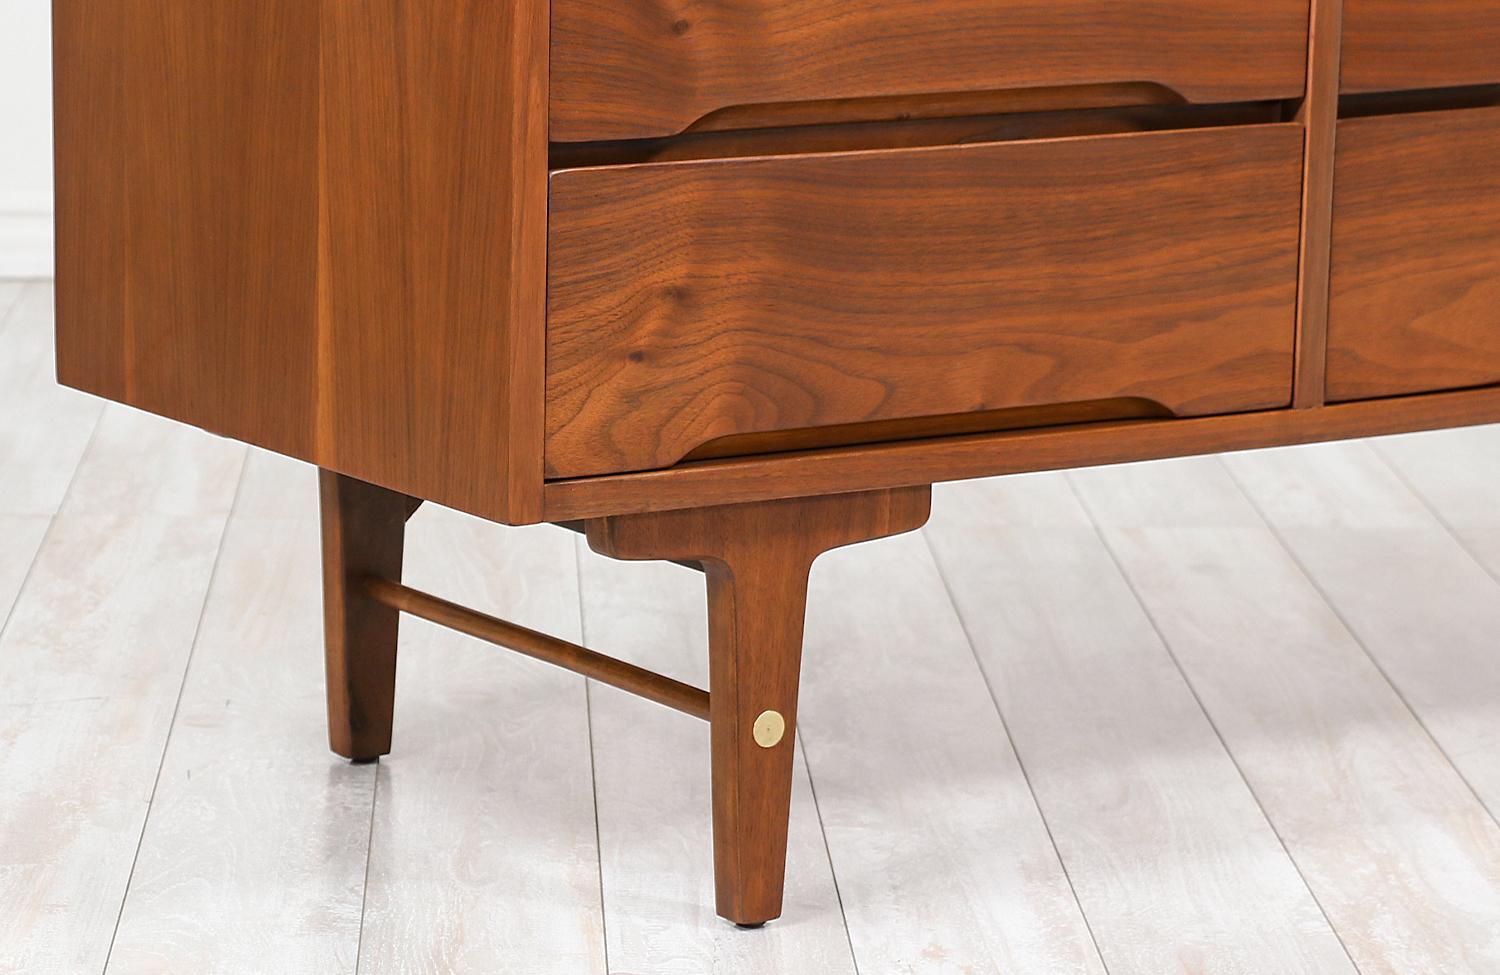 American Mid-Century Modern 9-Drawer Dresser by Stanley Furniture